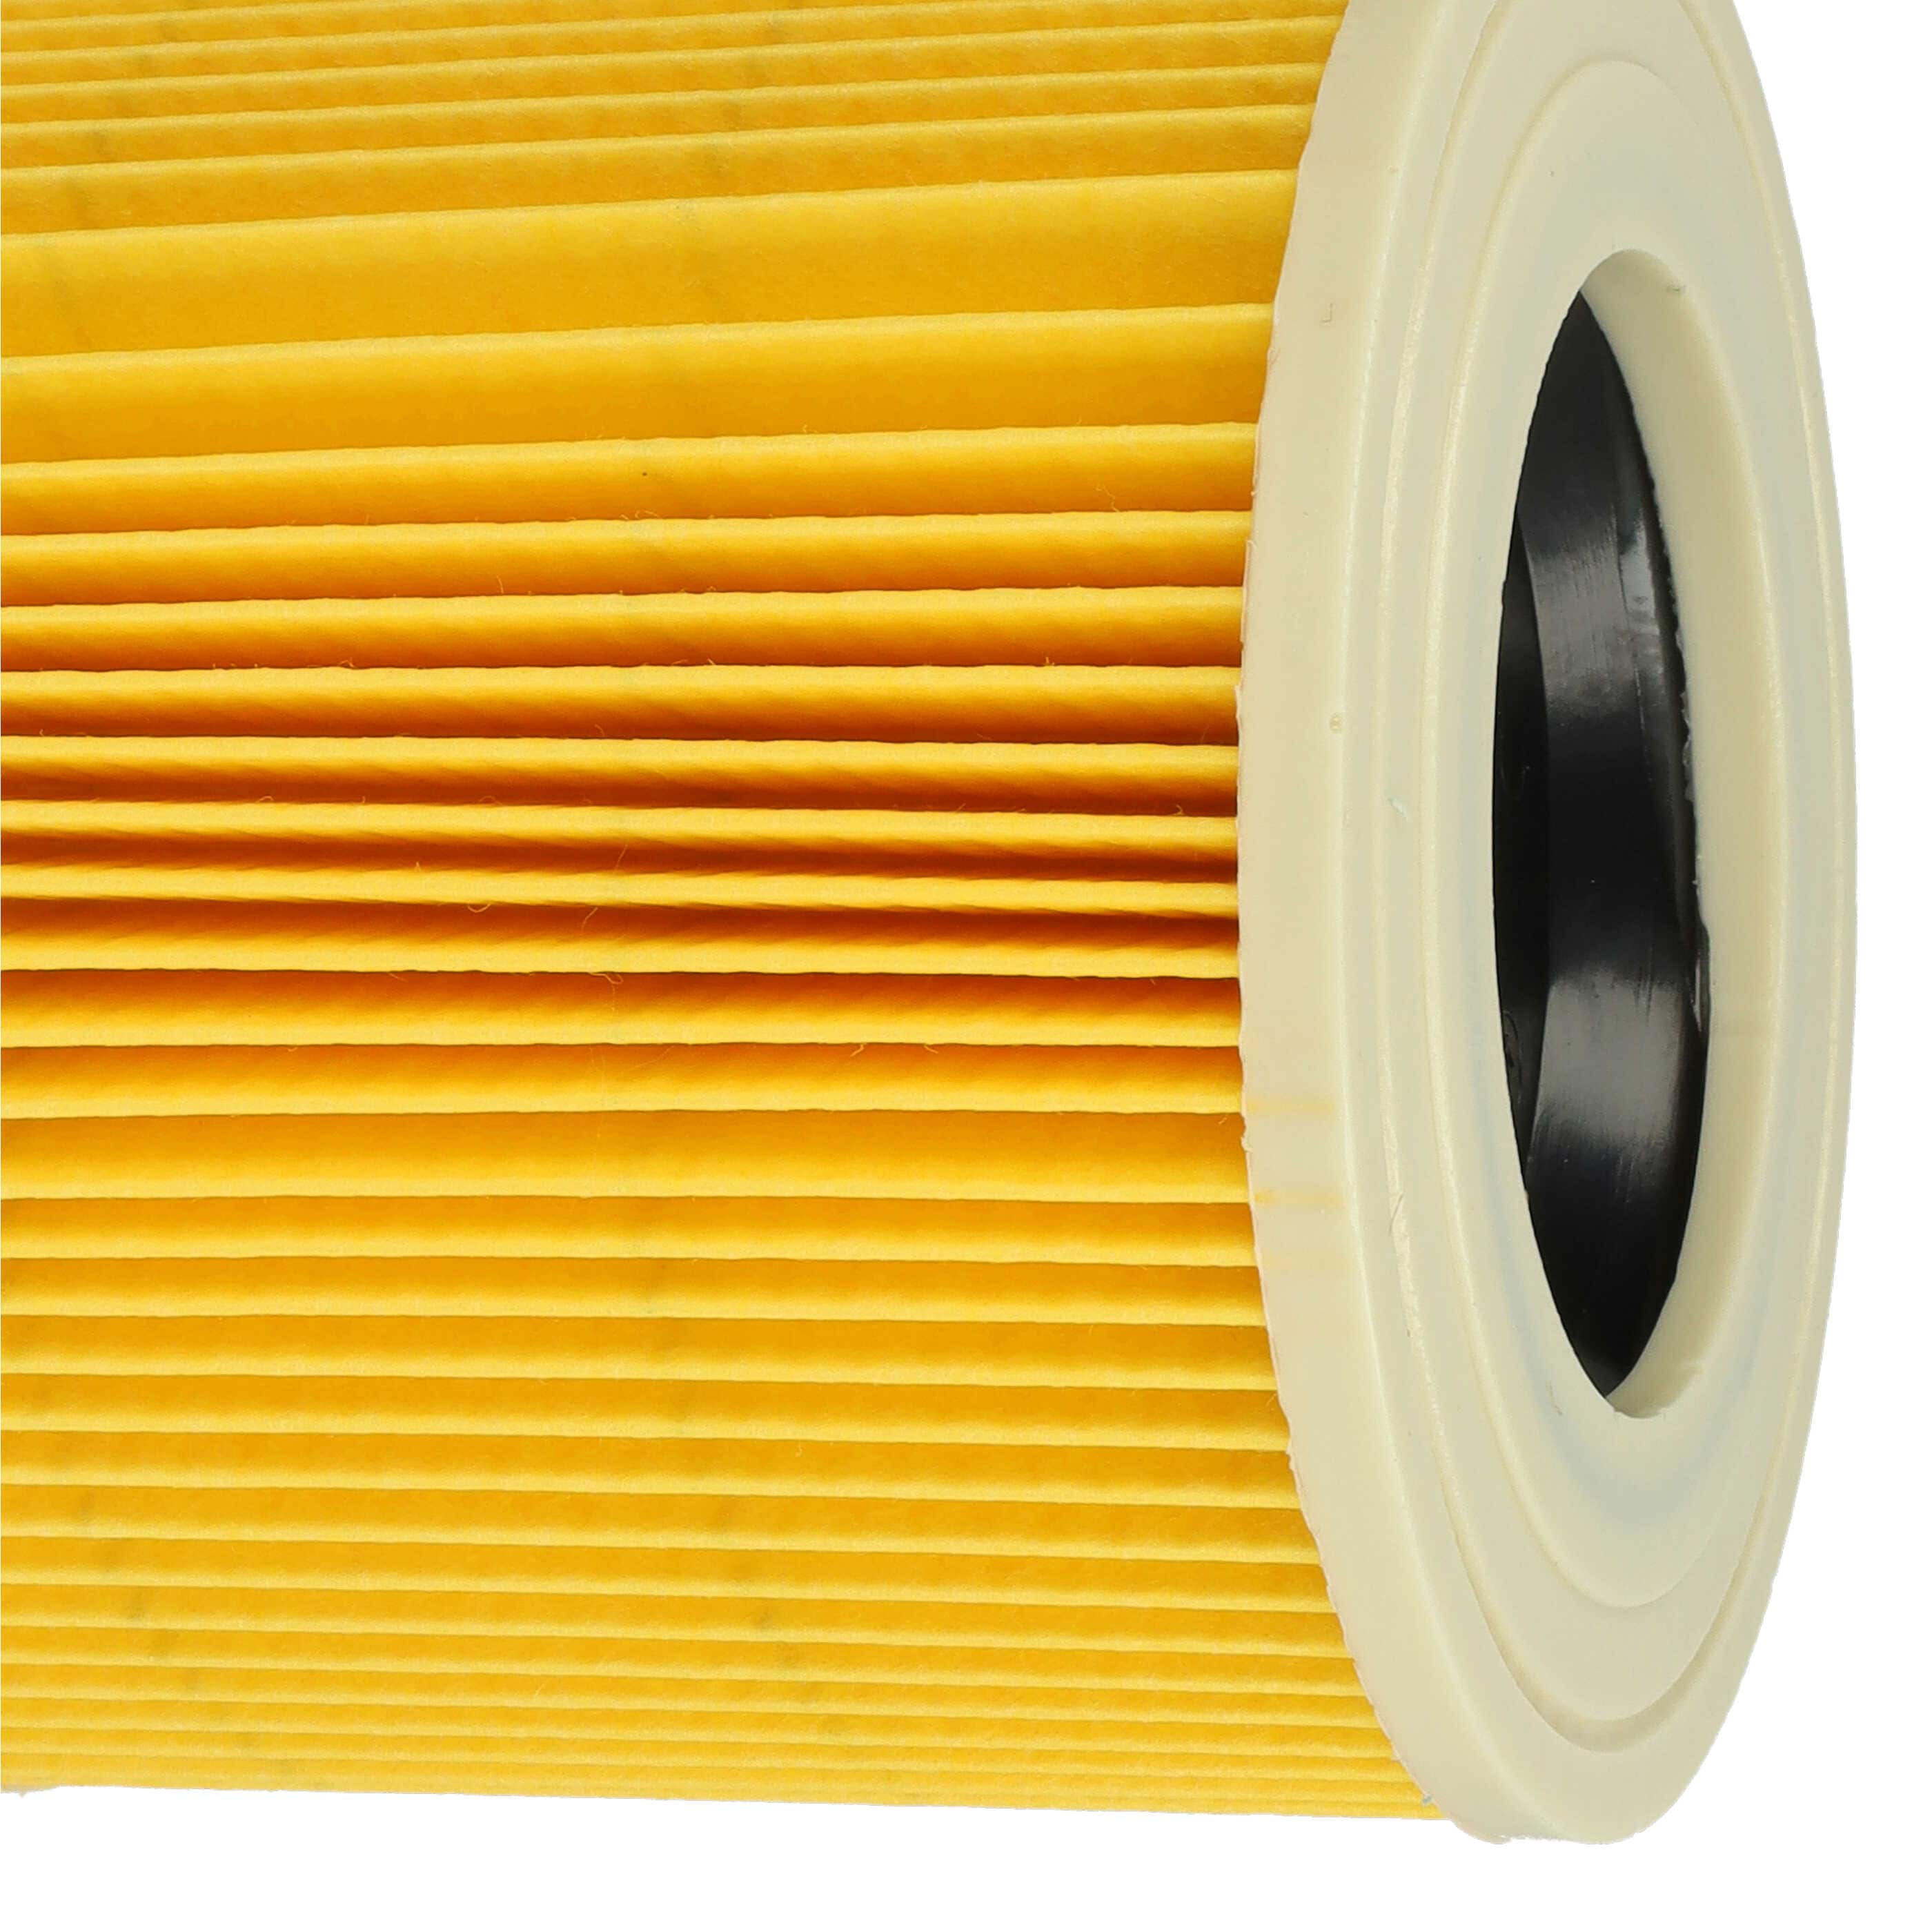 5x Filtr do odkurzacza Kärcher 6.414-552.0, 2.863-303.0 - wkład filtracyjny, żółty